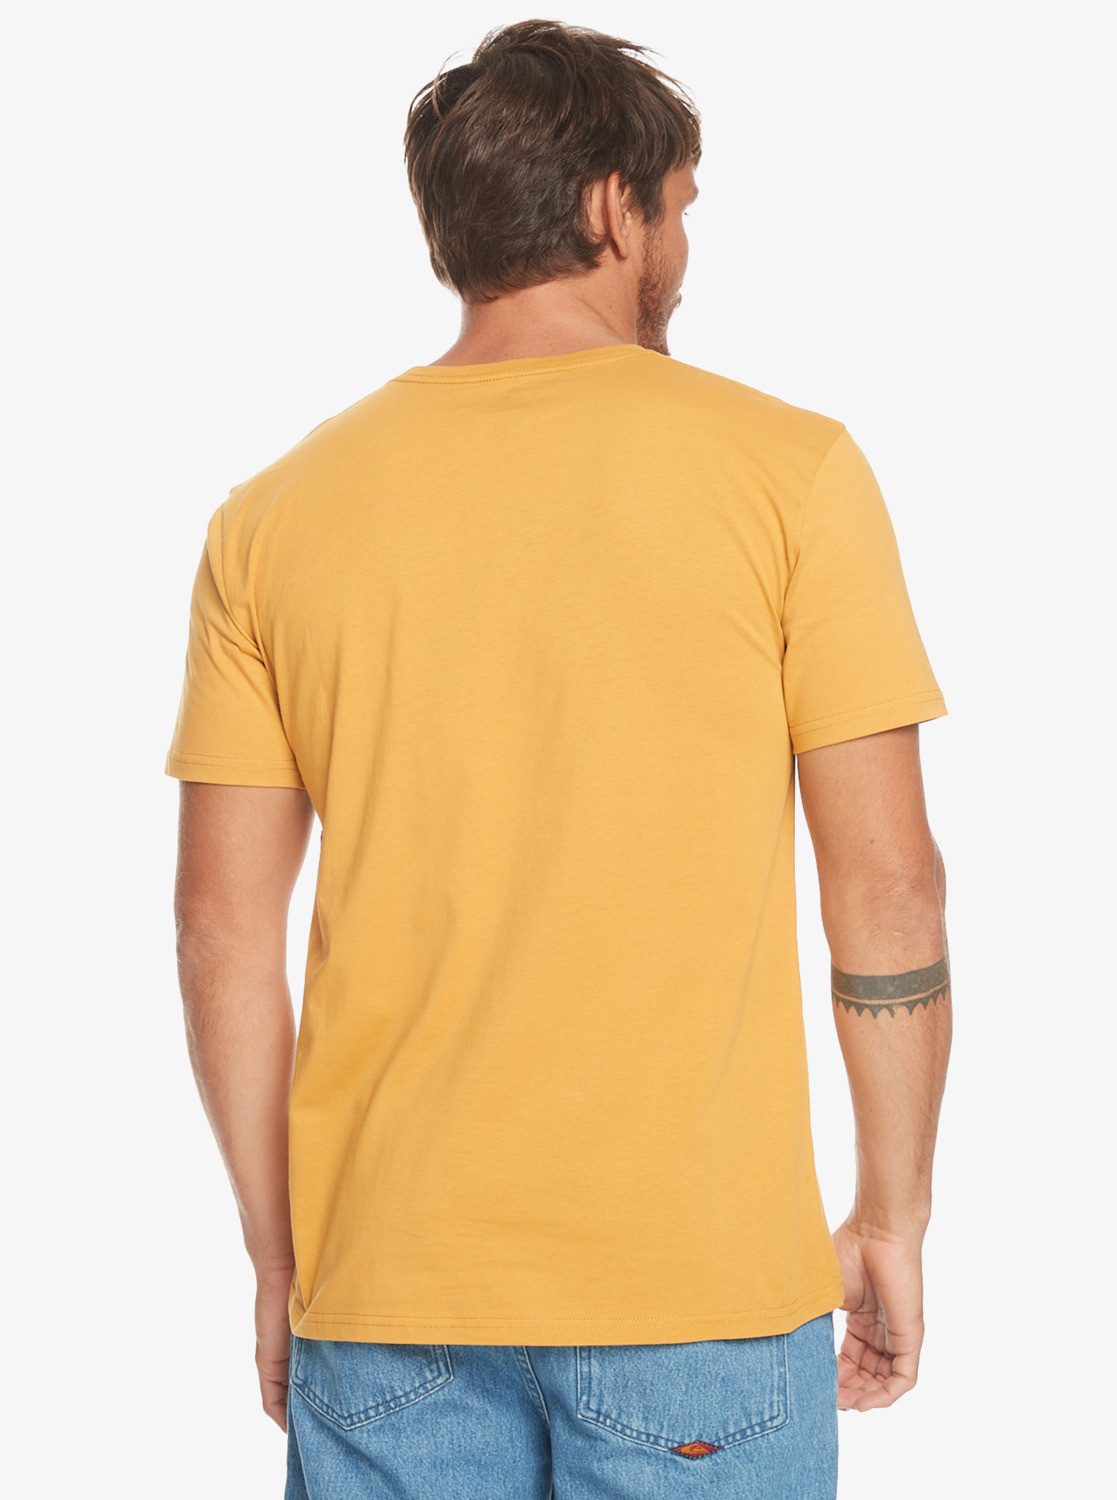 Mustard Line Quiksilver Gradient T-Shirt